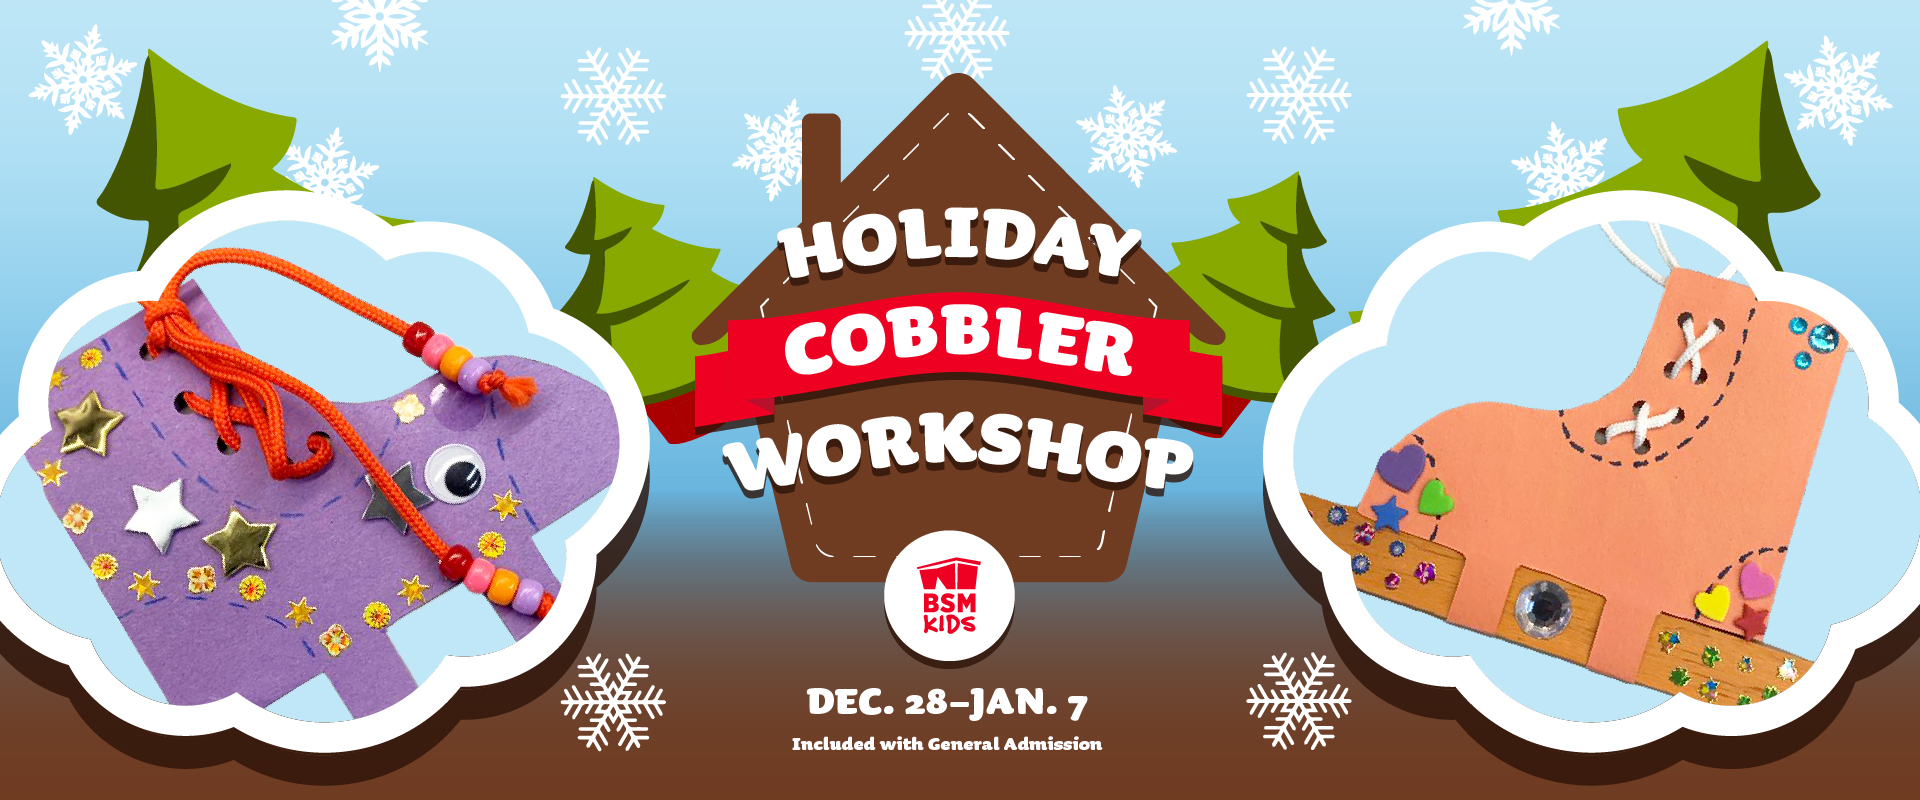 BSM Holiday Cobbler Workshop